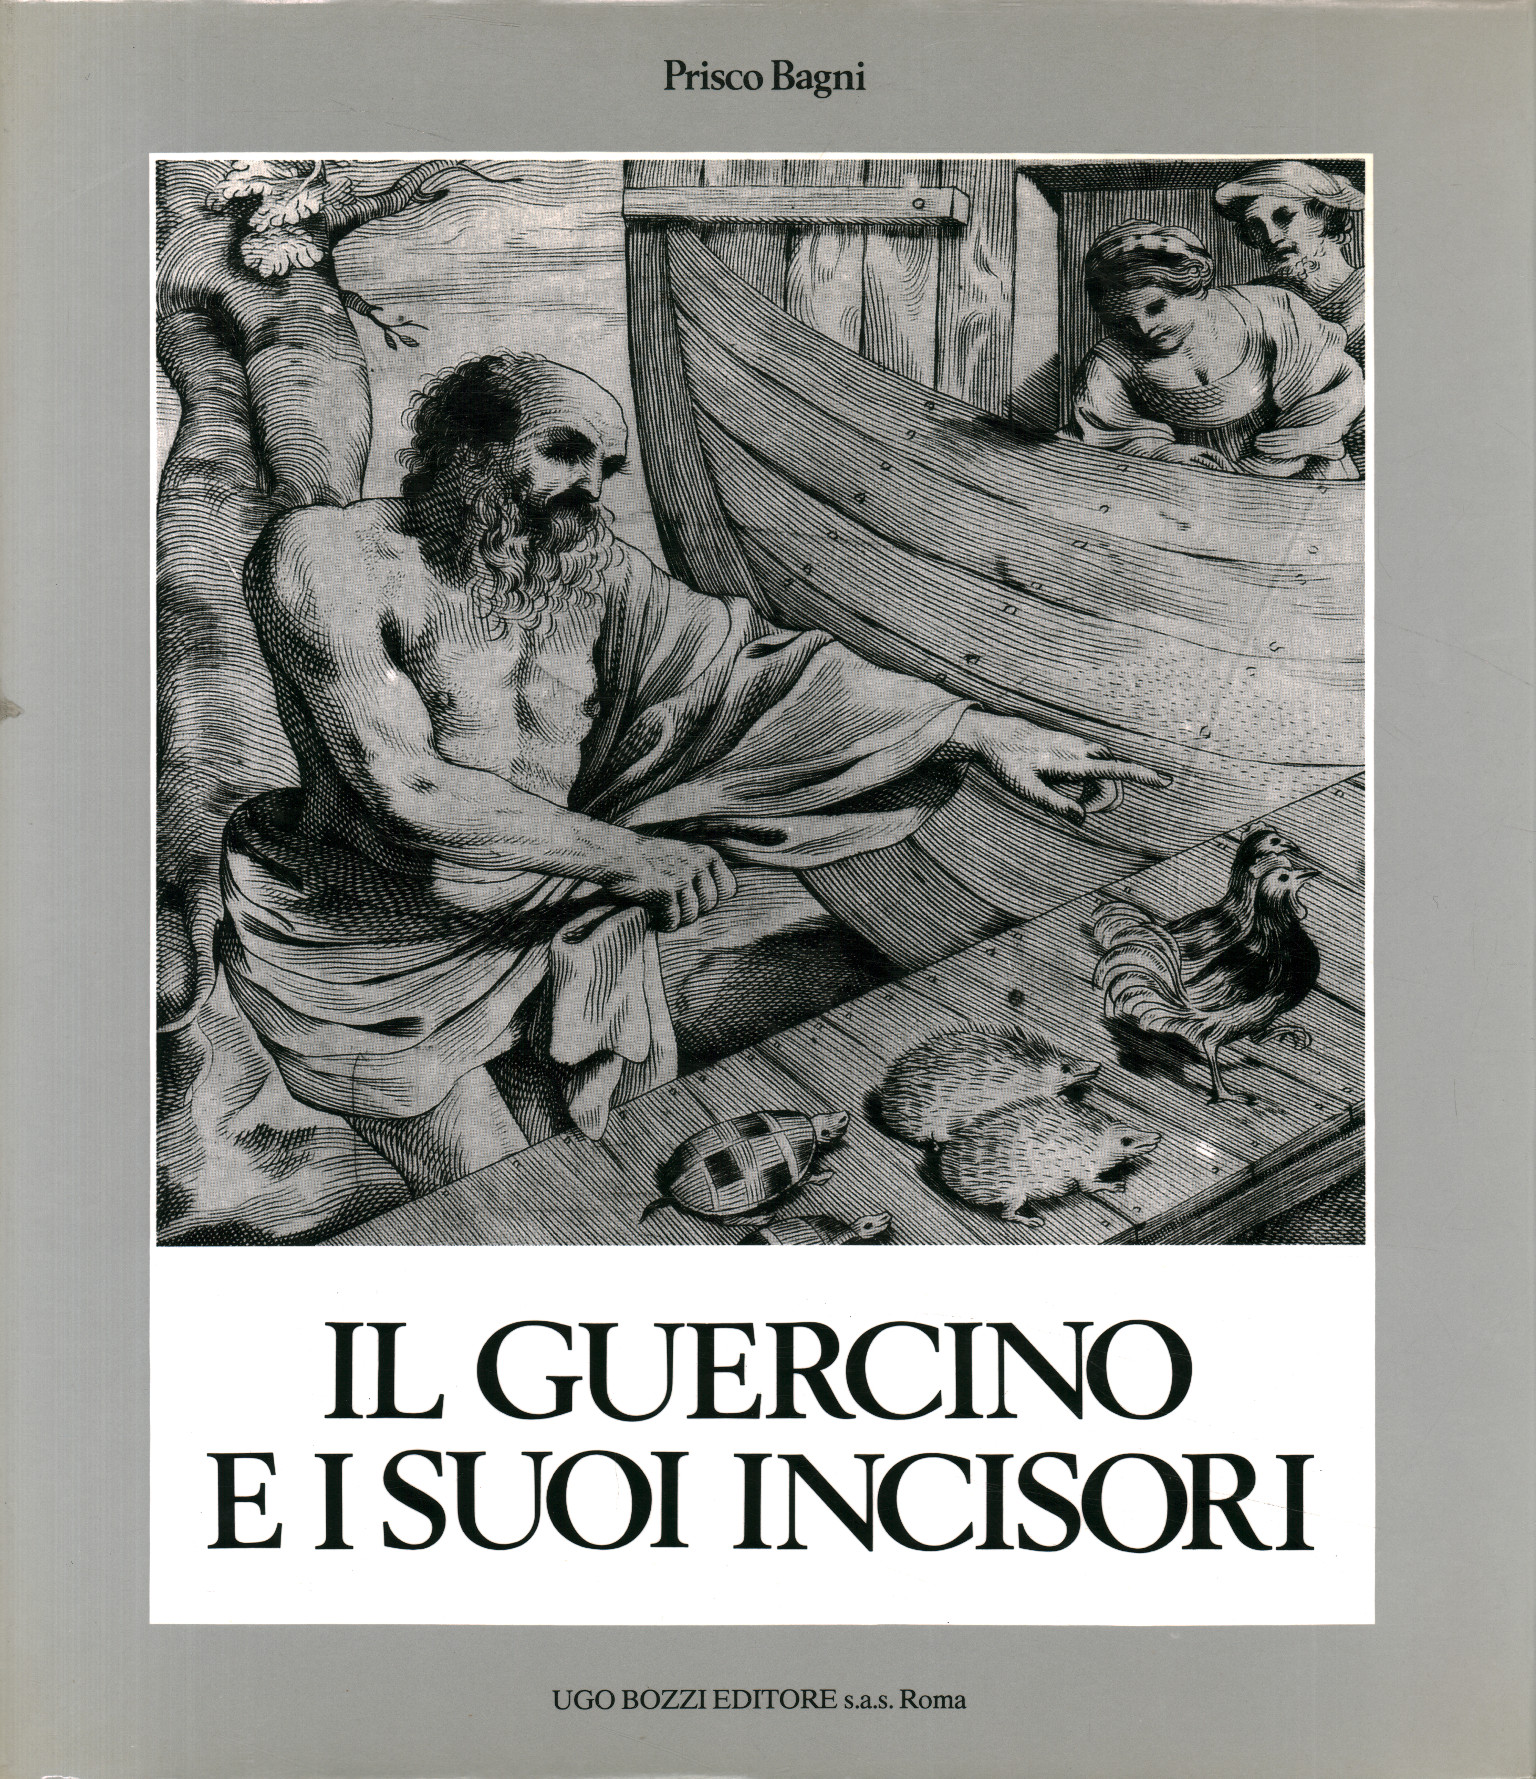 Guercino, Guercino and his engravers